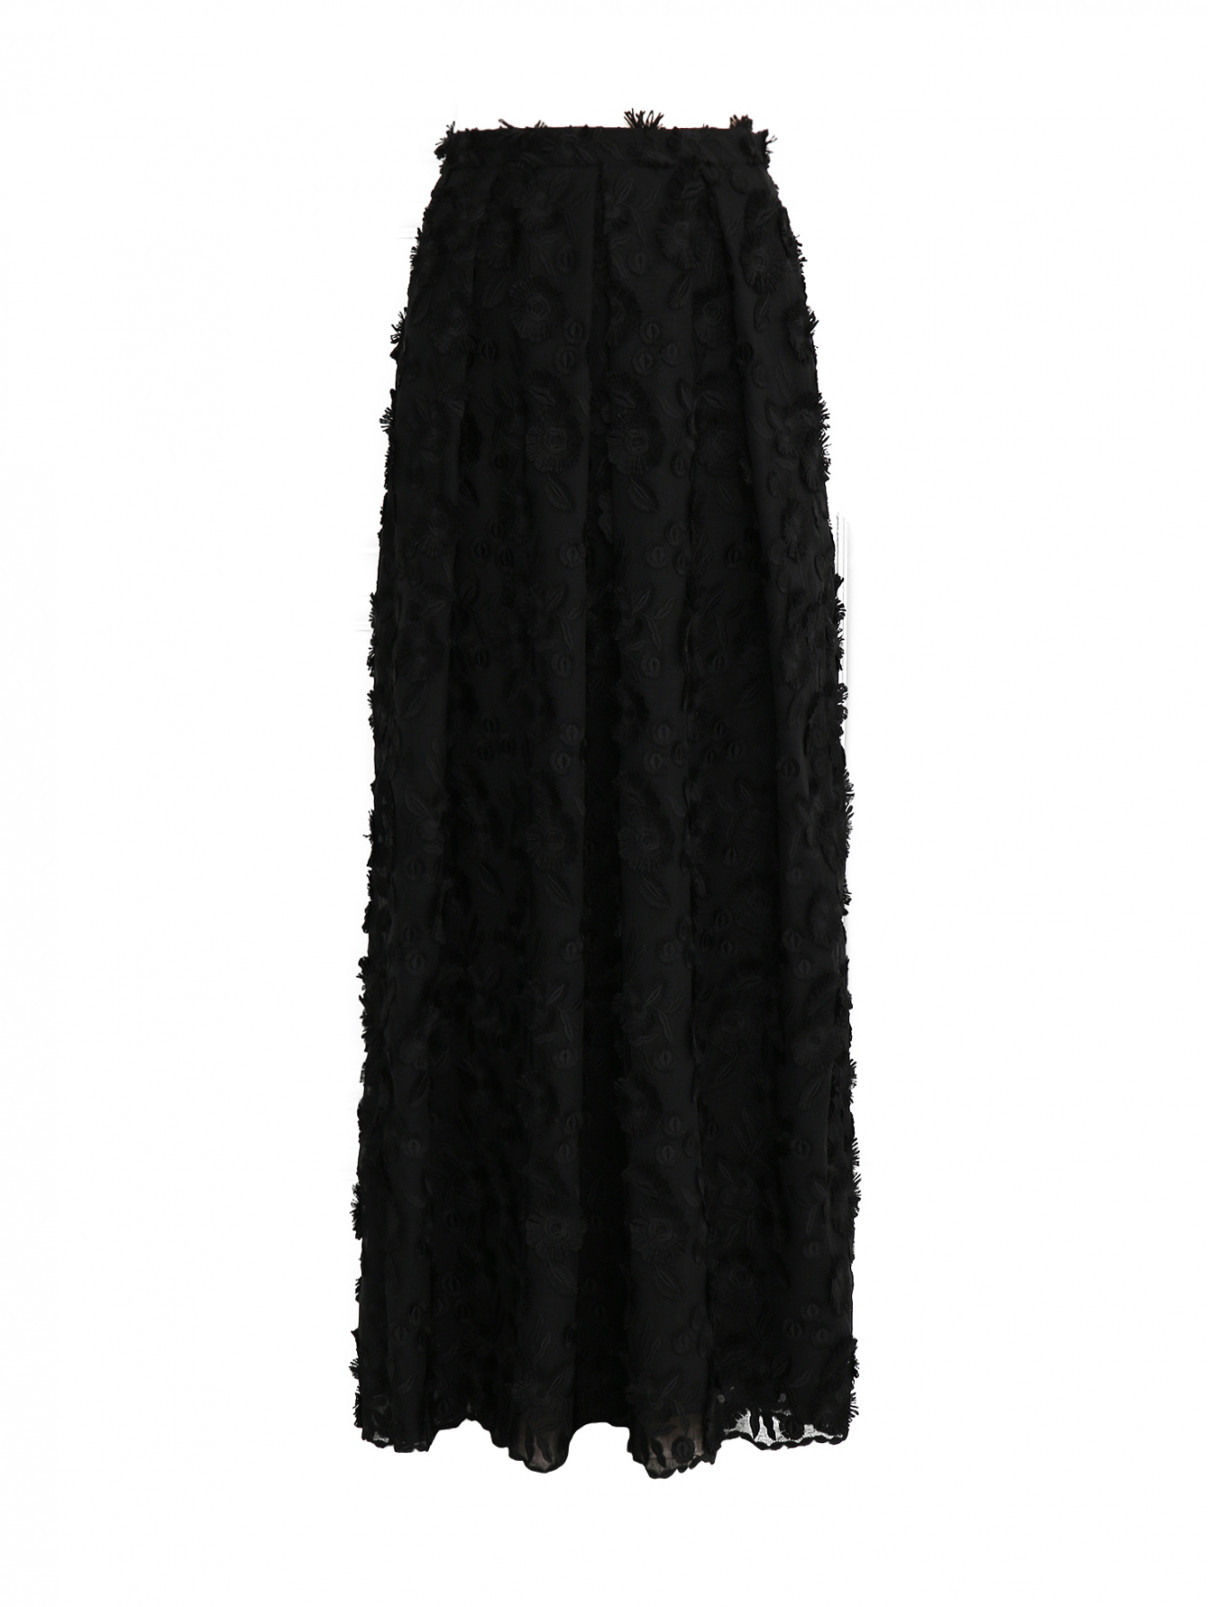 Юбка со складками у пояса из фактурной ткани Moschino Boutique  –  Общий вид  – Цвет:  Черный